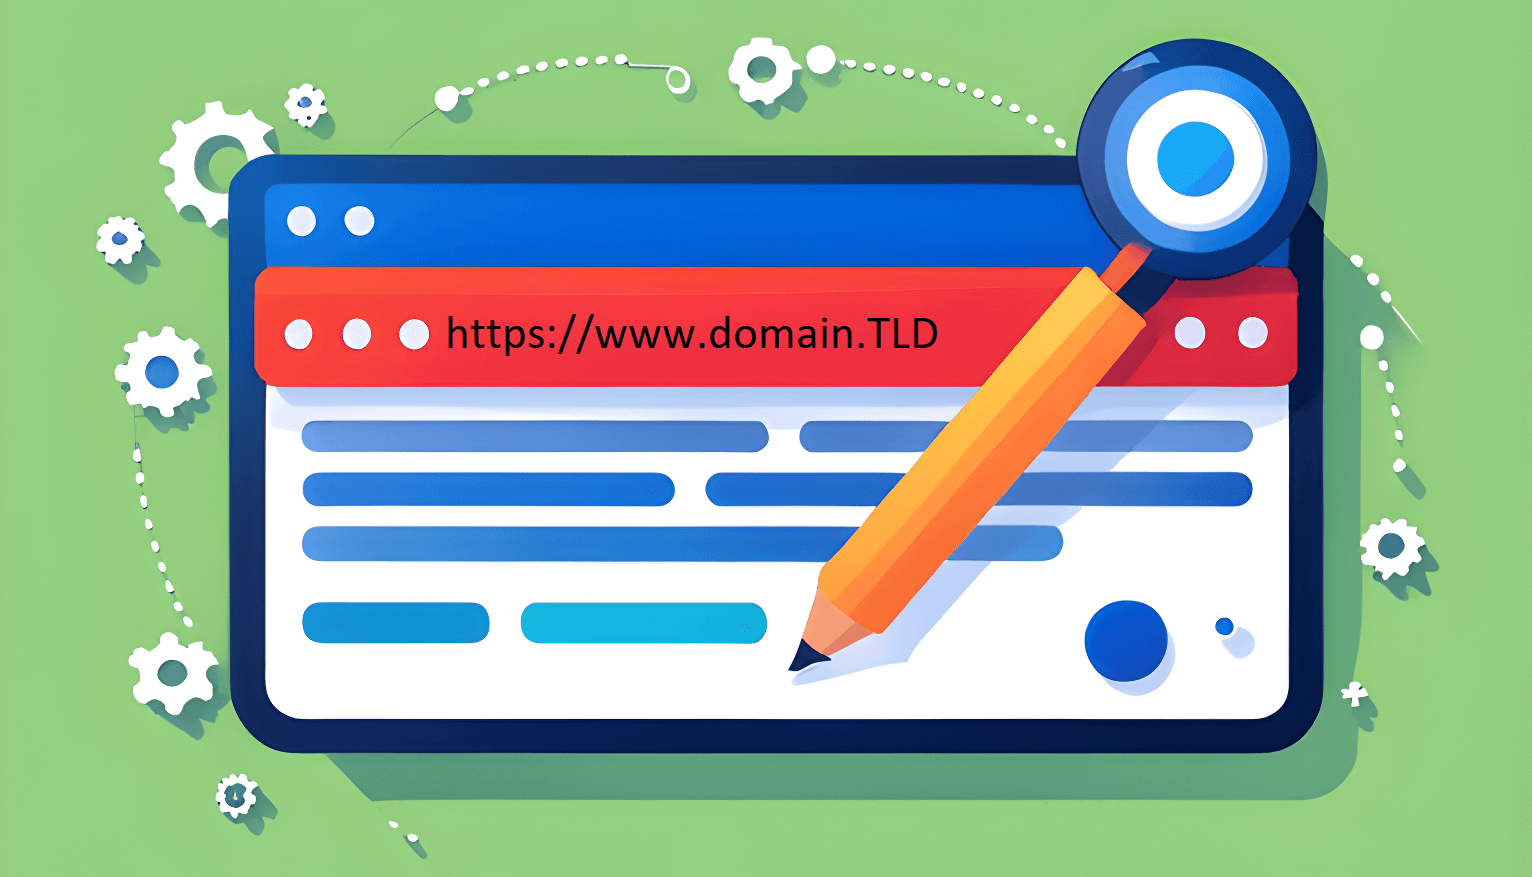 Google's Domain Selection Guide: Avoid Cheap TLDs, Spam Risks & Bo